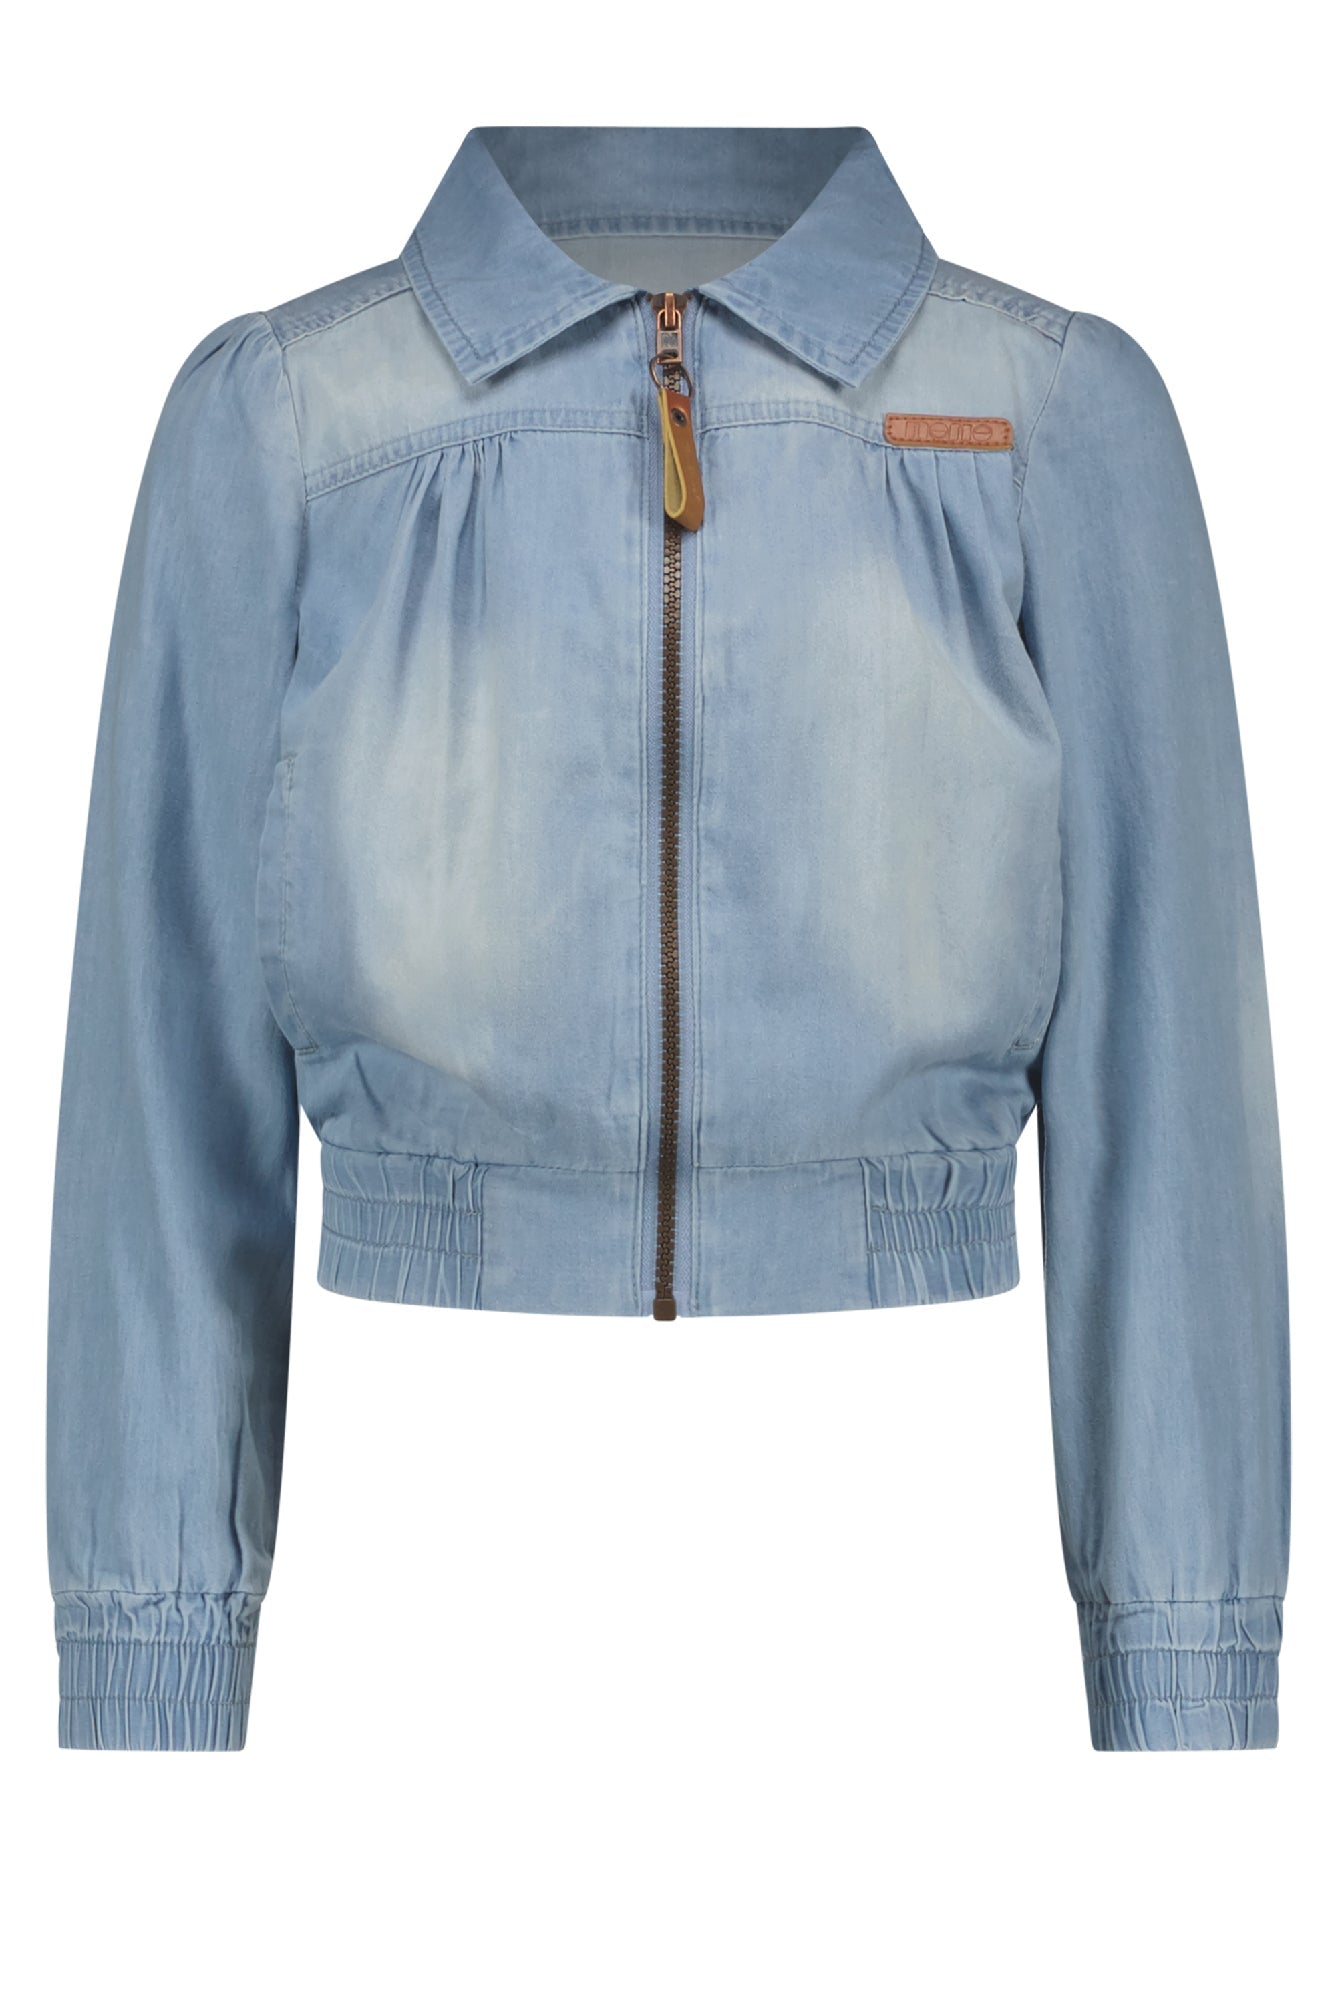 Meisjes Donna light weight denim zip up jacket van NoNo in de kleur Jeans in maat 134-140.